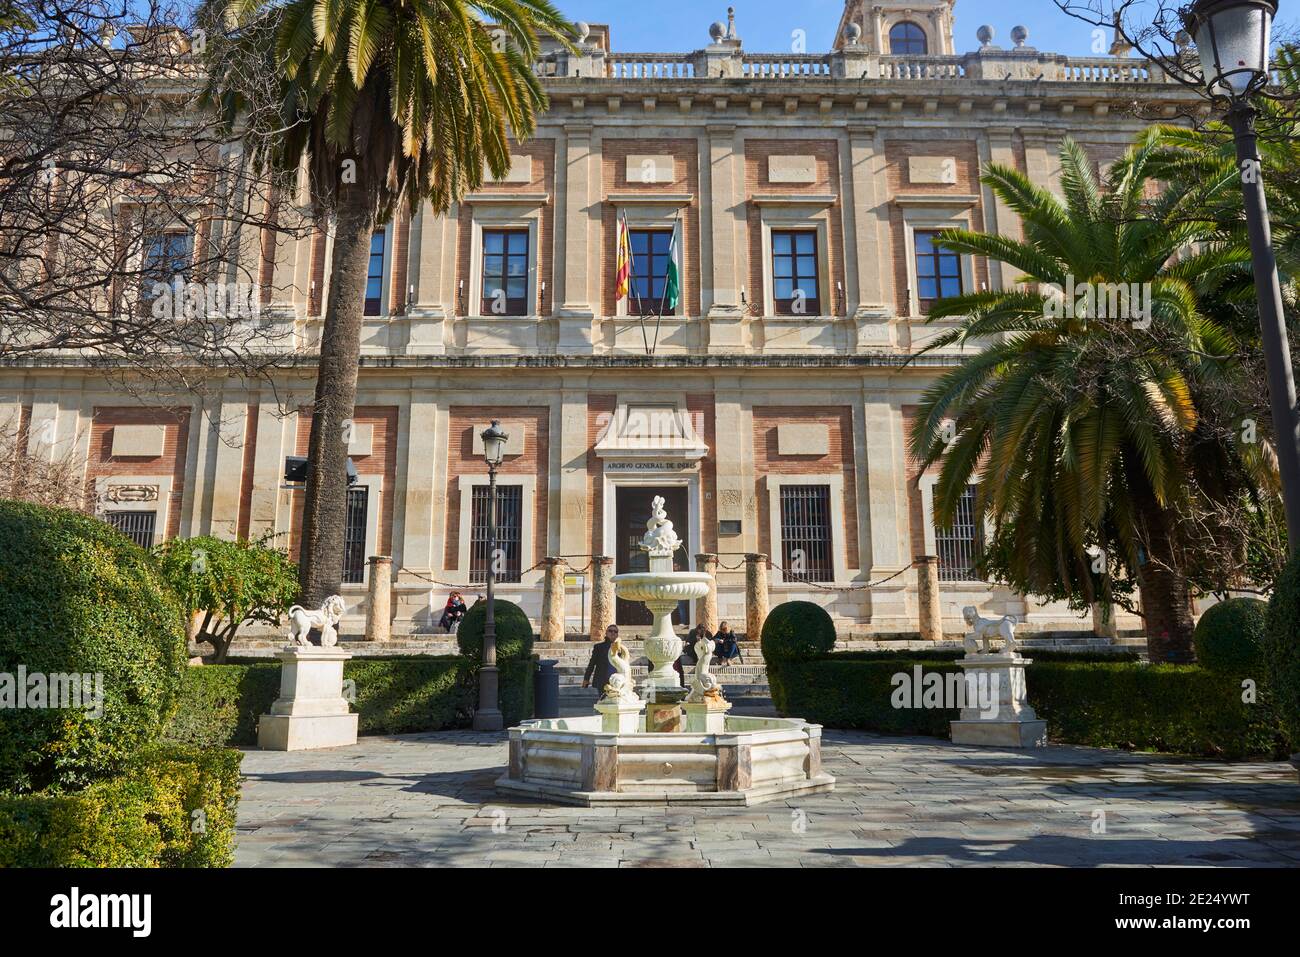 Siviglia, Andalusia, Spagna, Europa. Archivio Generale delle Indie (Archivio Generale de Indias) Foto Stock